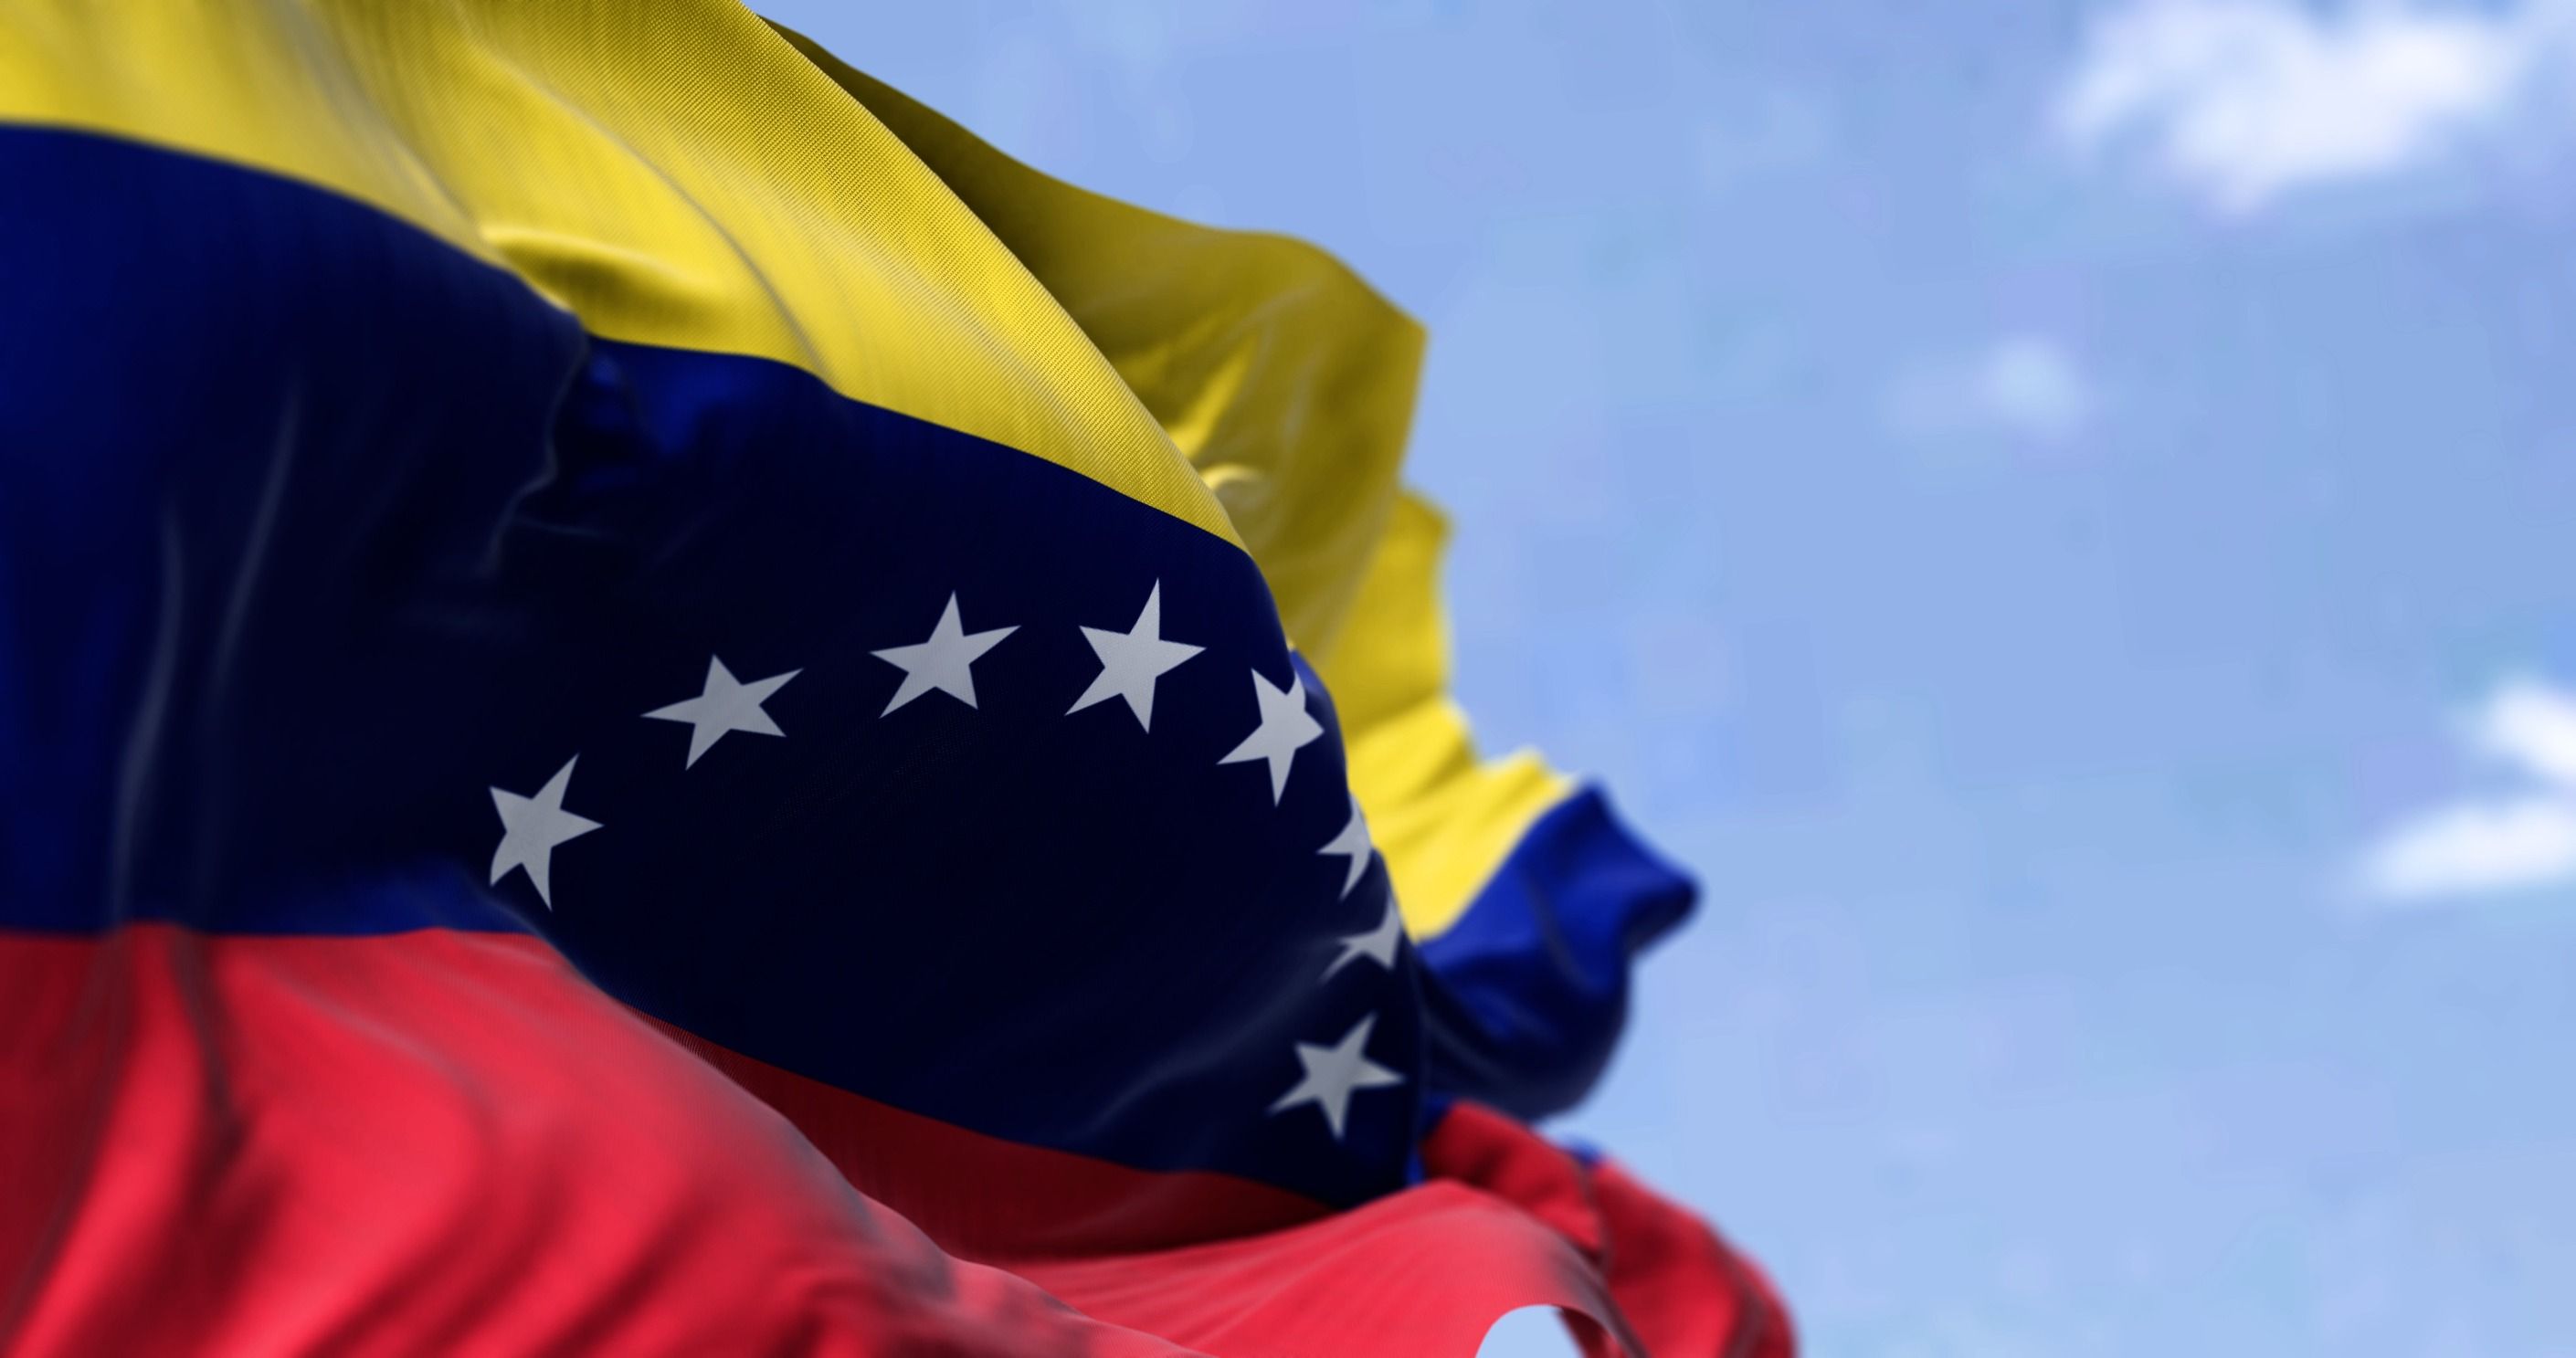 Bandera nacional de Venezuela.